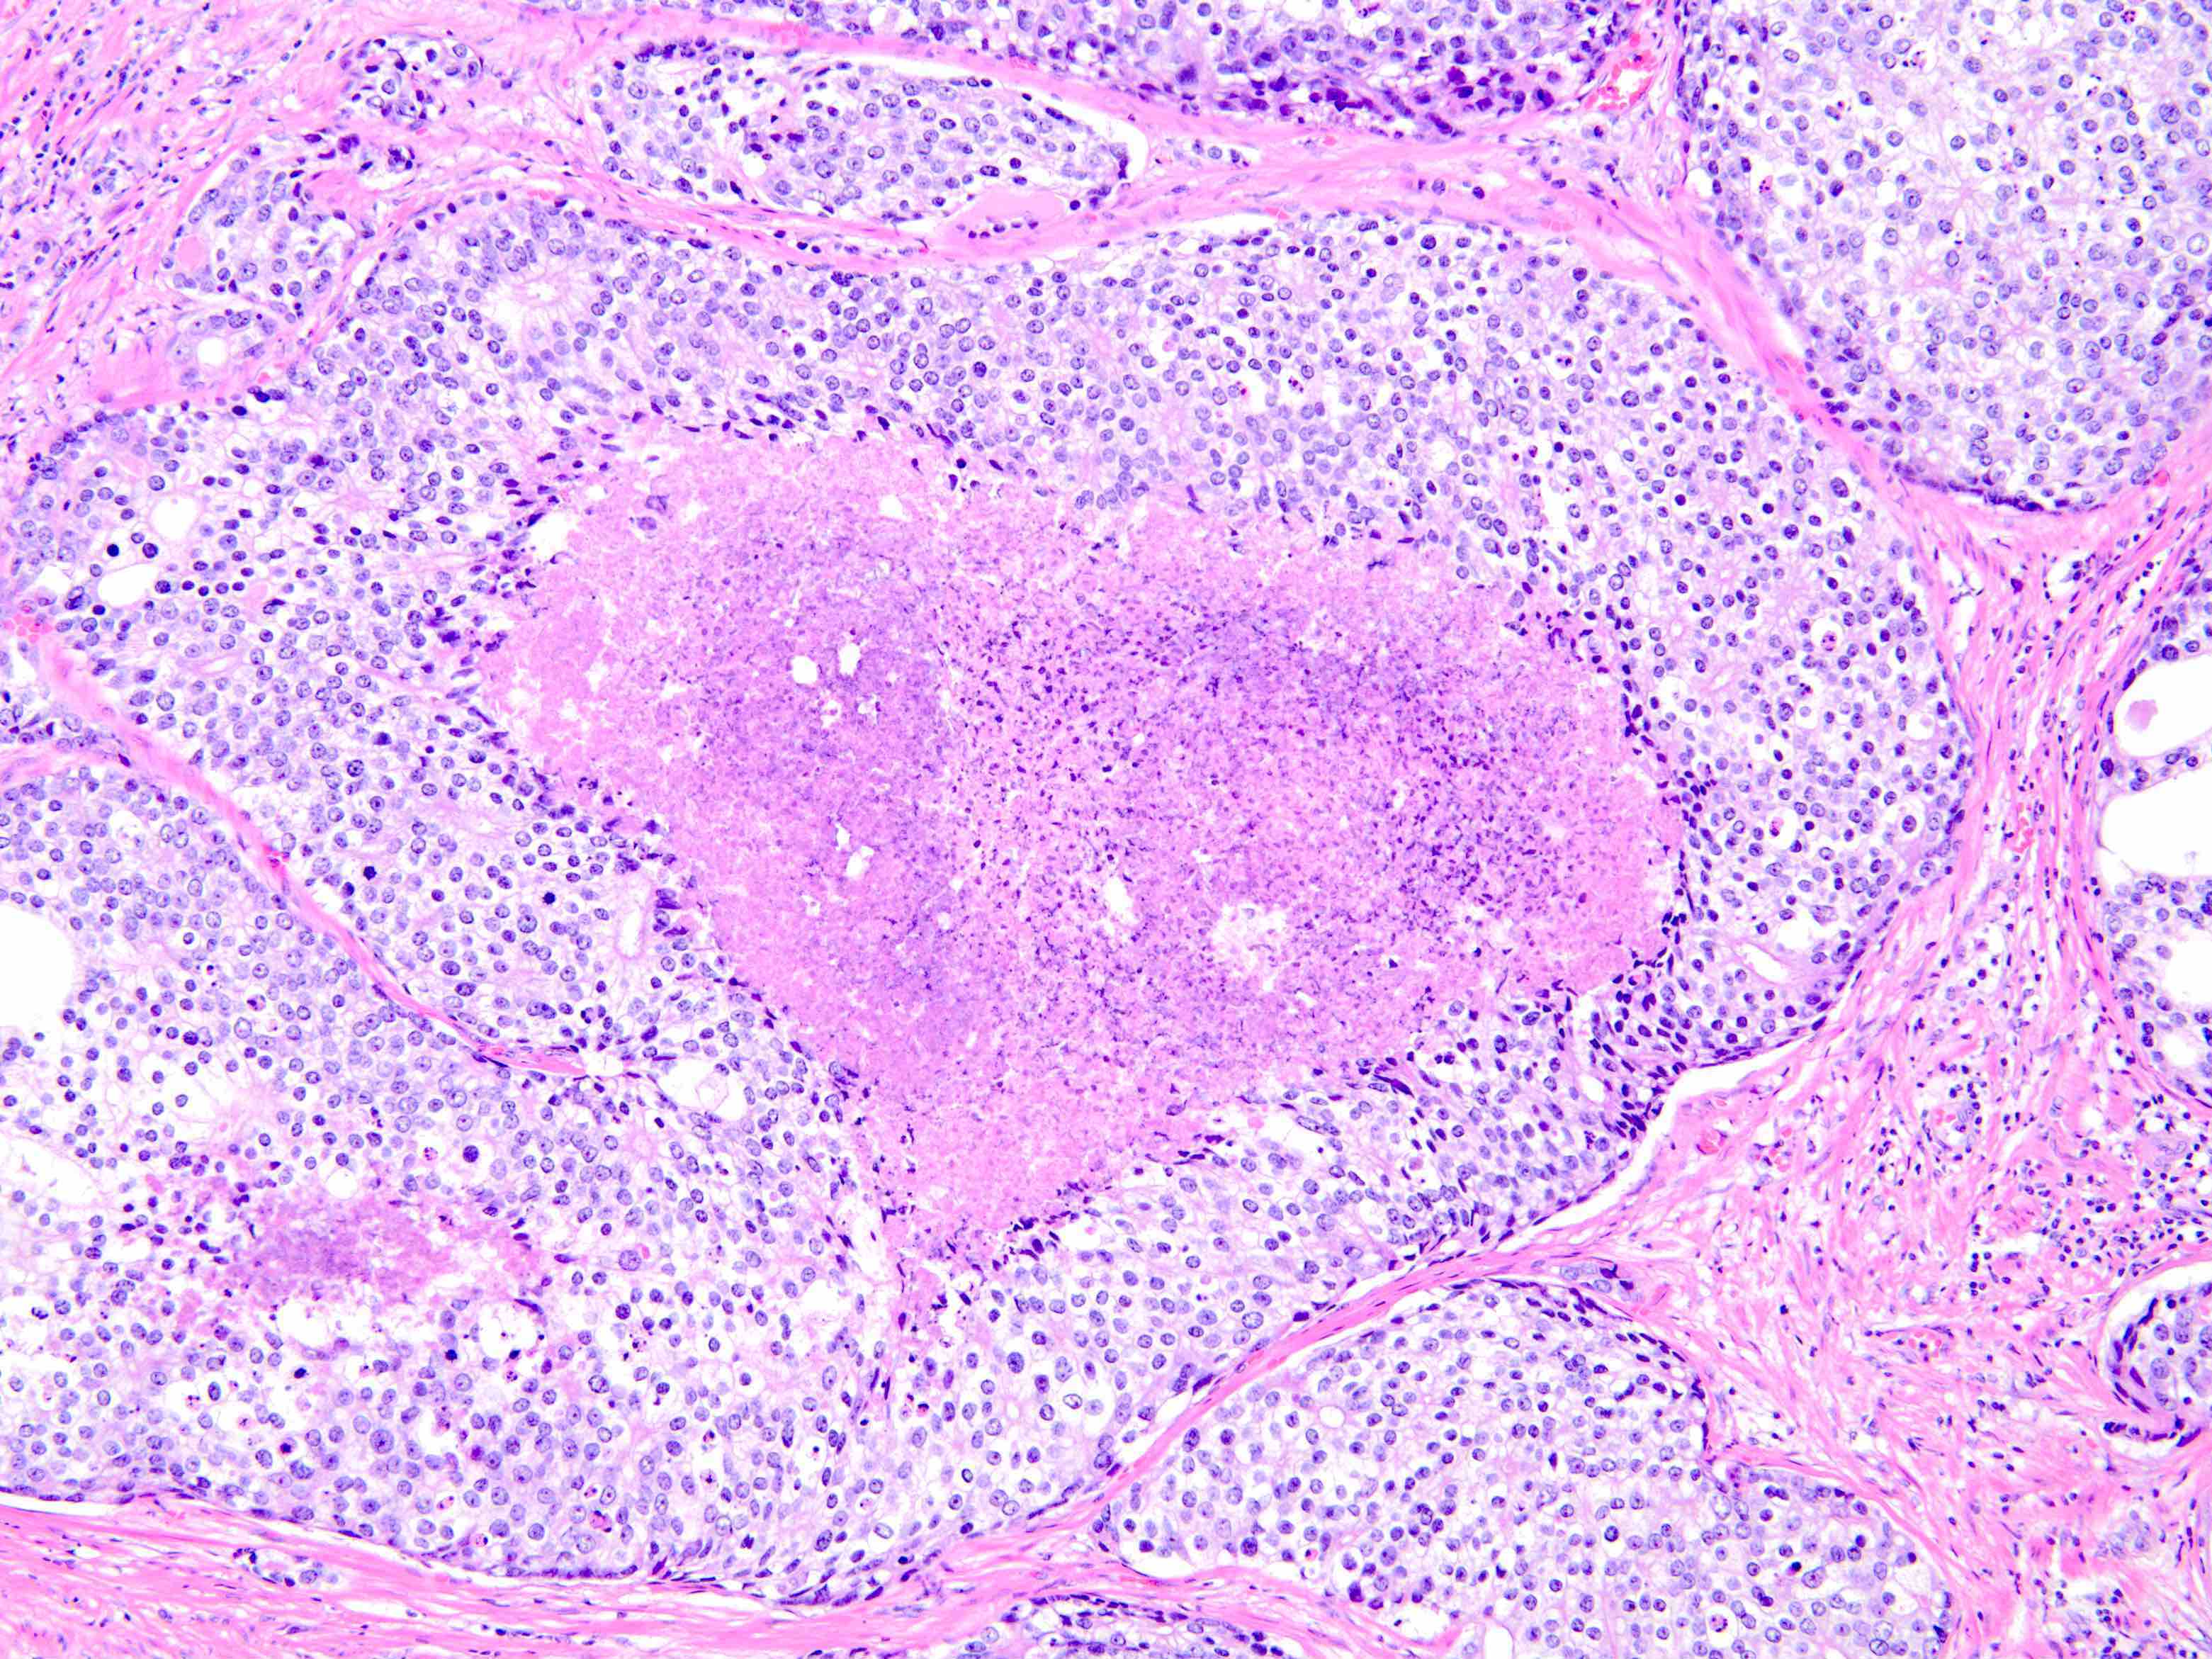 Ductal adenocarcinoma prostate histology, Képesszótár